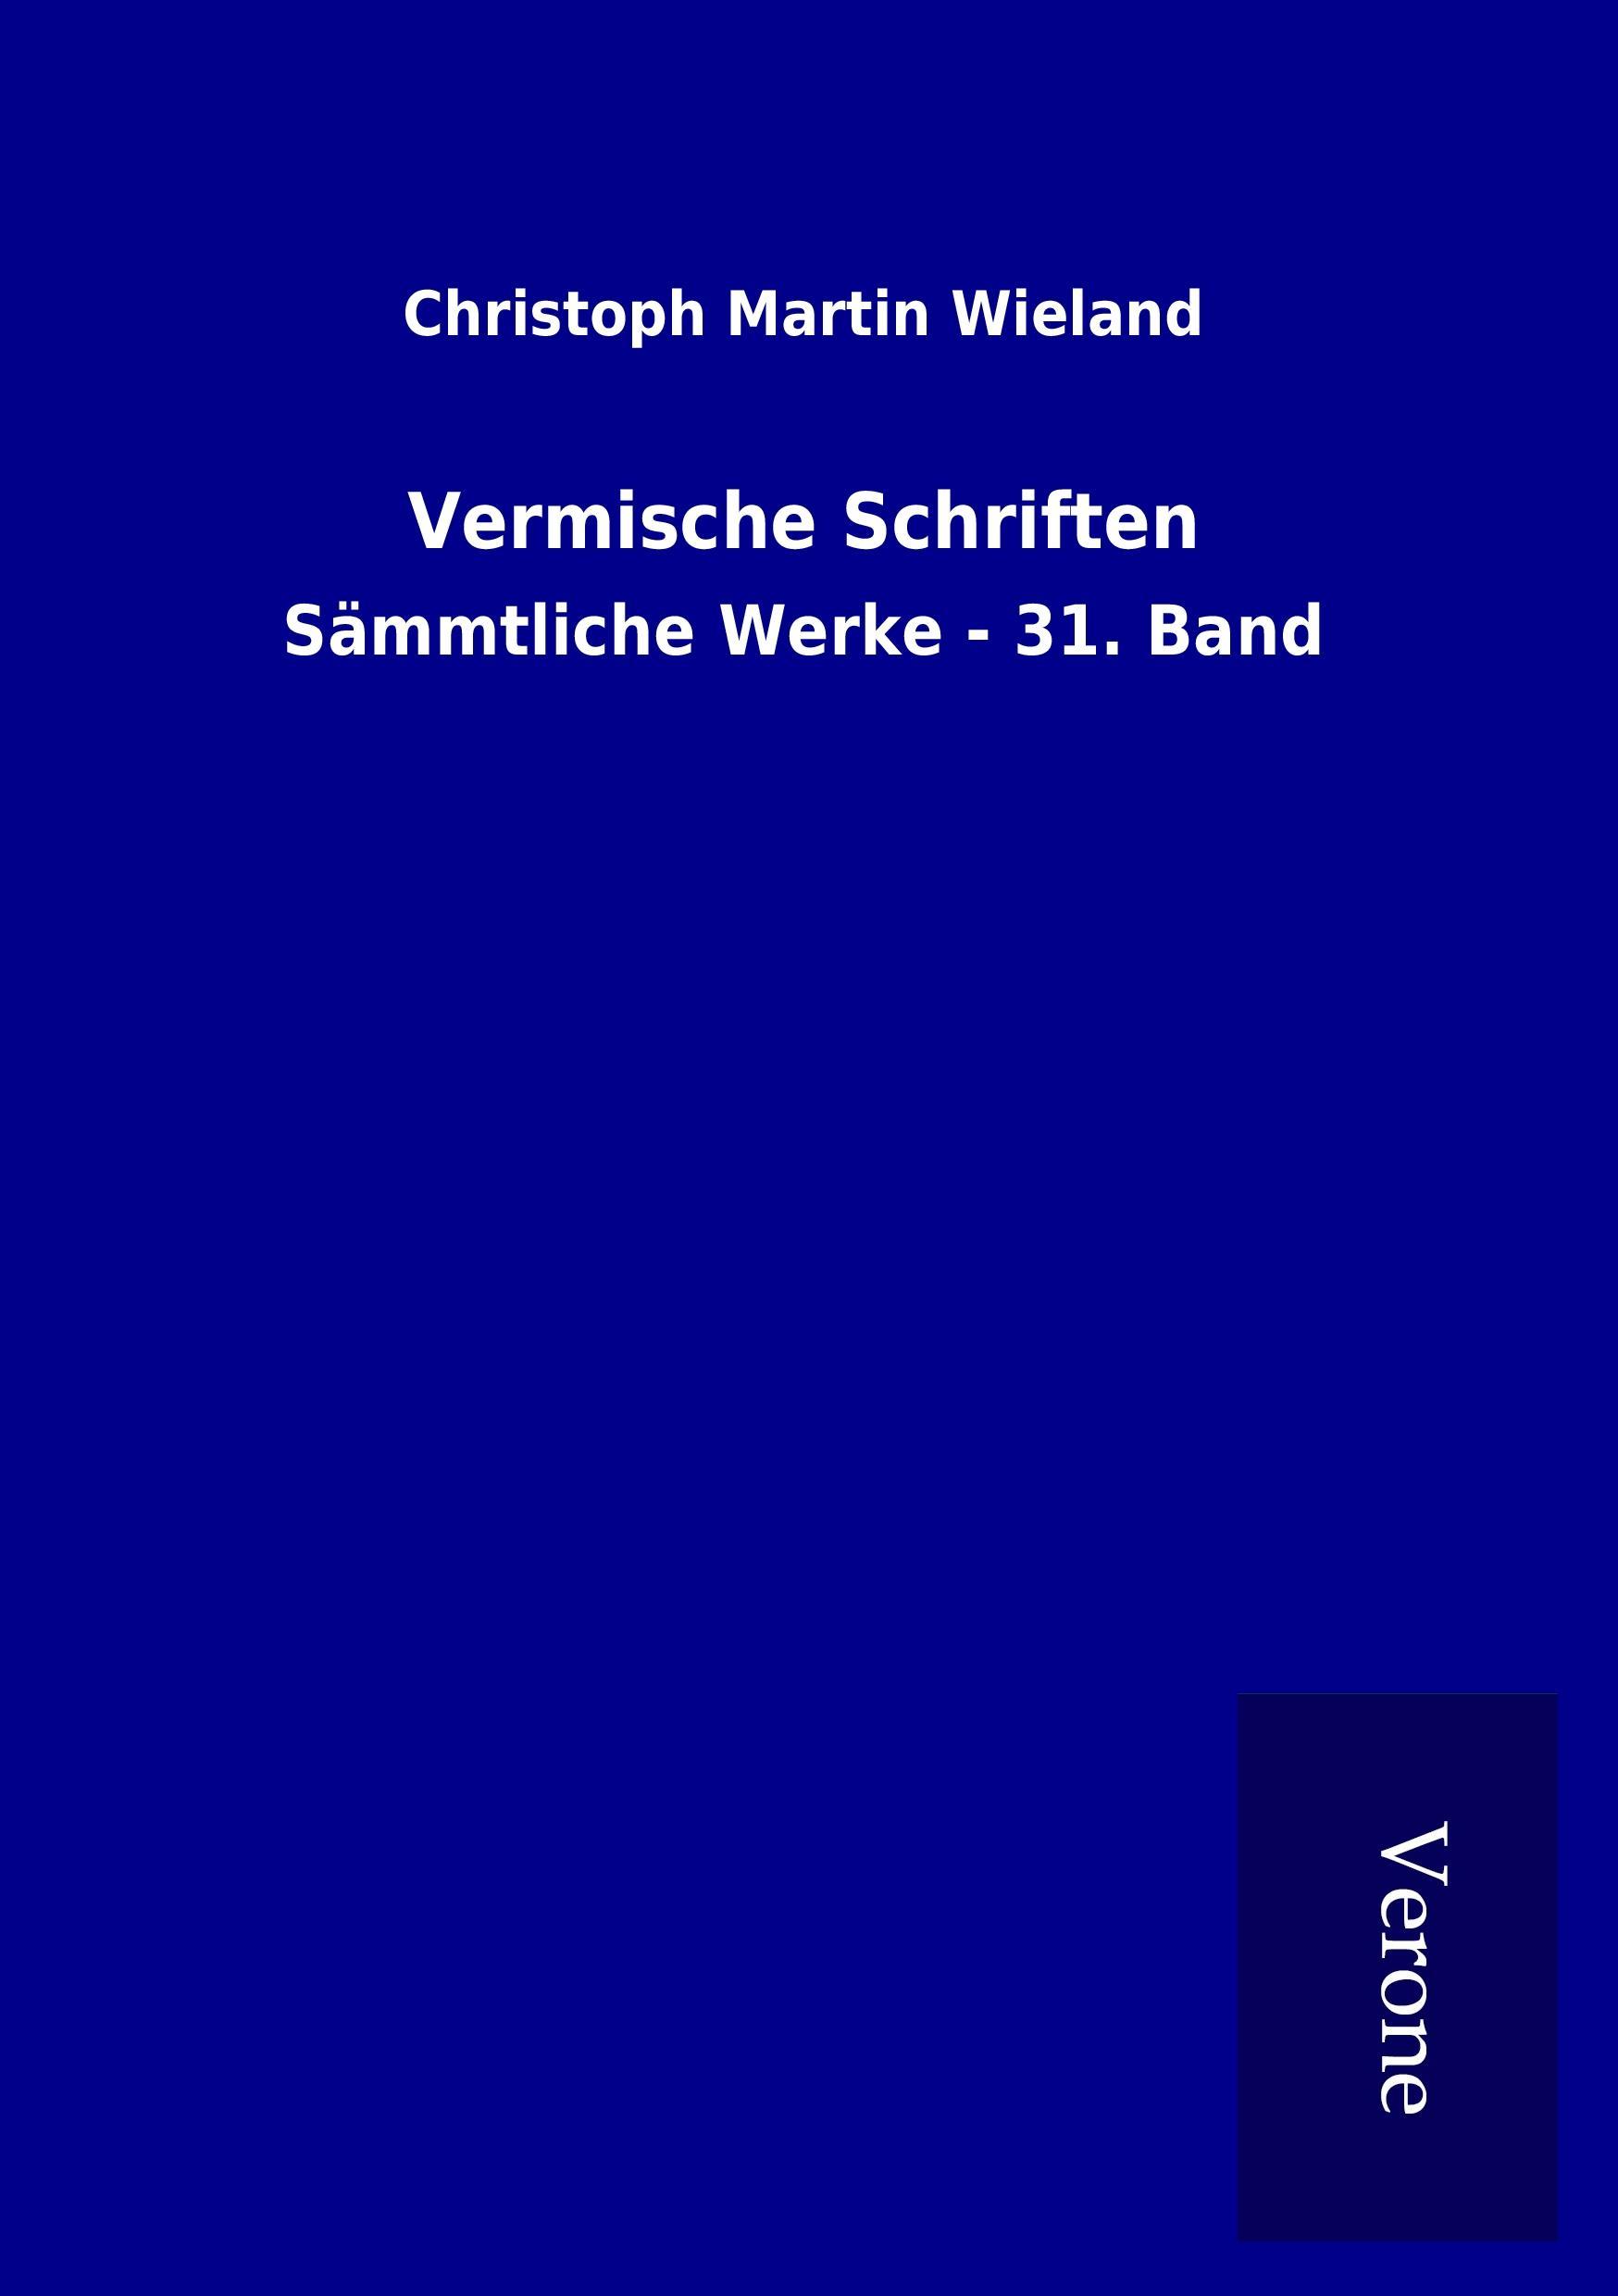 Vermische Schriften - Wieland, Christoph Martin